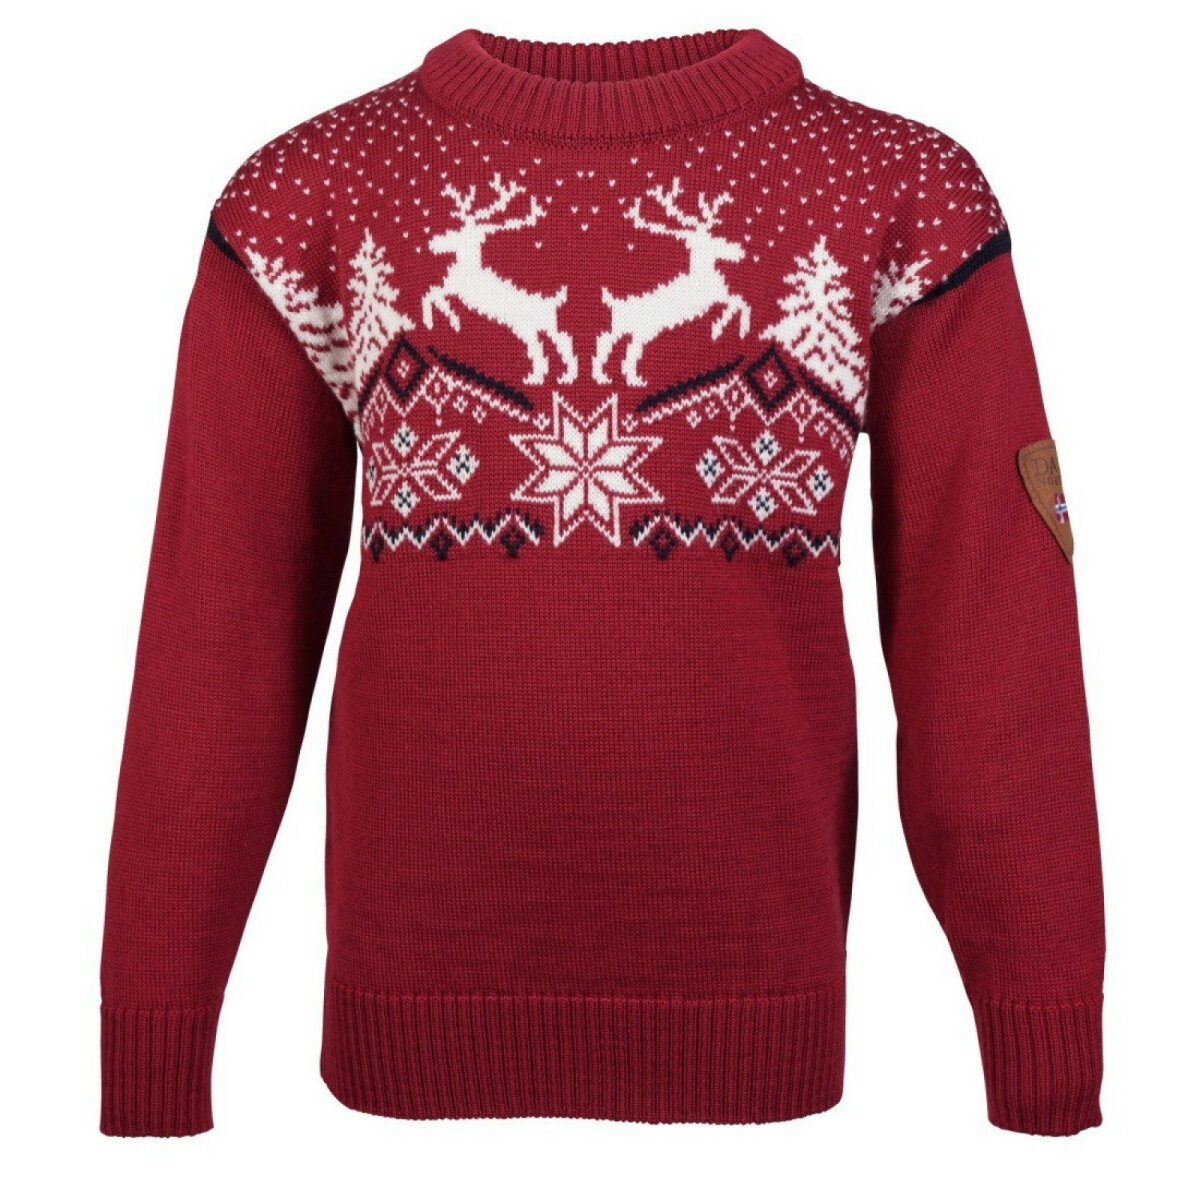 Nathaniel Ward hoeveelheid verkoop Discriminatie op grond van geslacht Christmas Sweater Kids Red von Dale of Norway - NORWEGERPULLOVER.de, 99,90 €